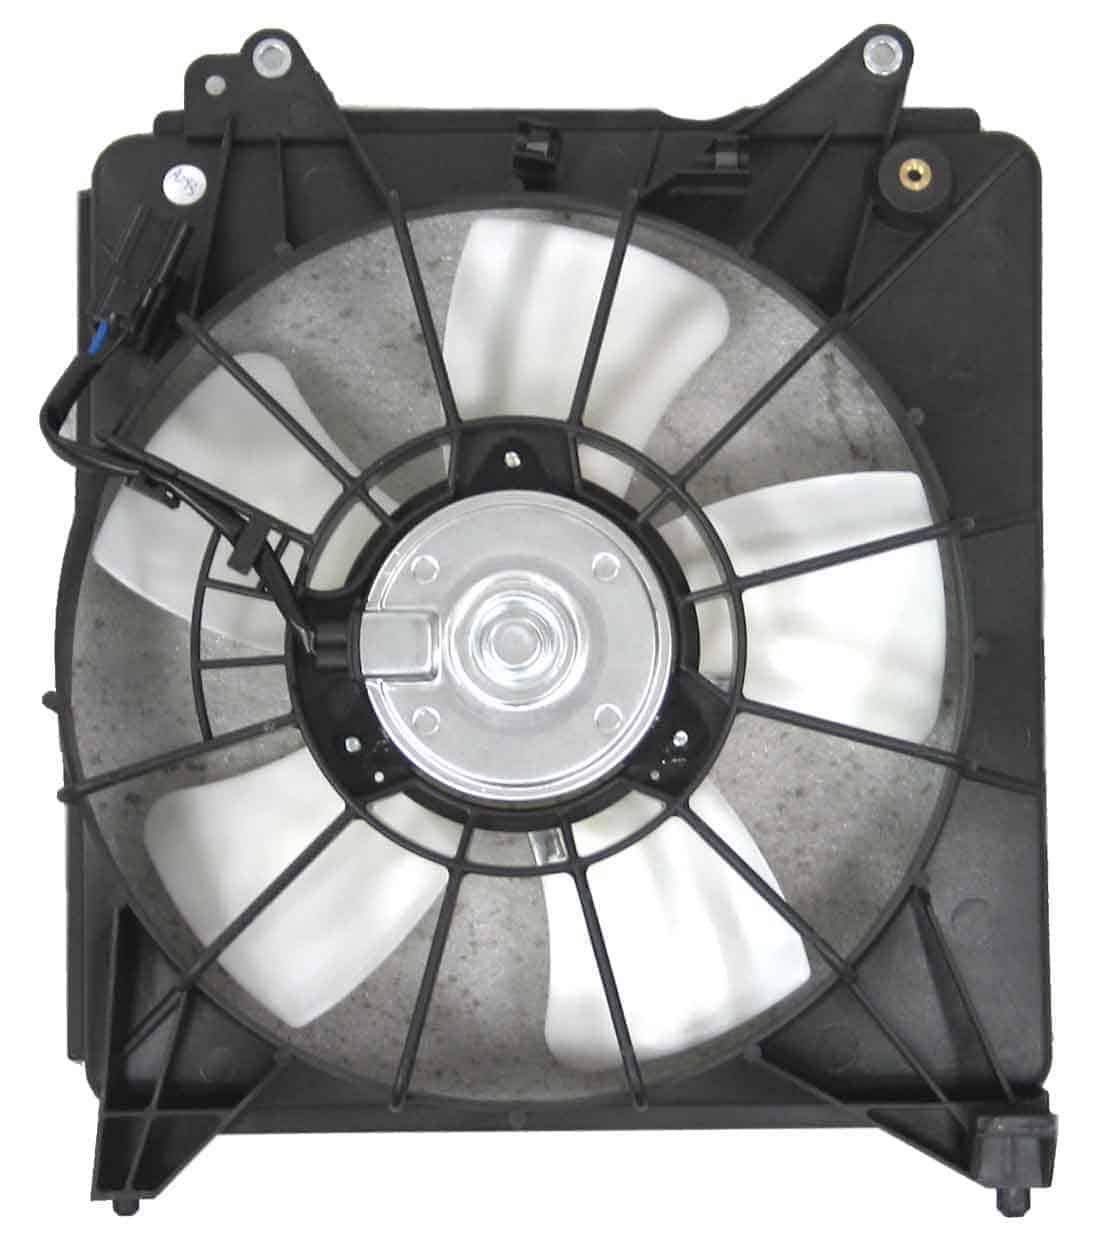 HO3115150 Cooling System Fan Radiator Assembly